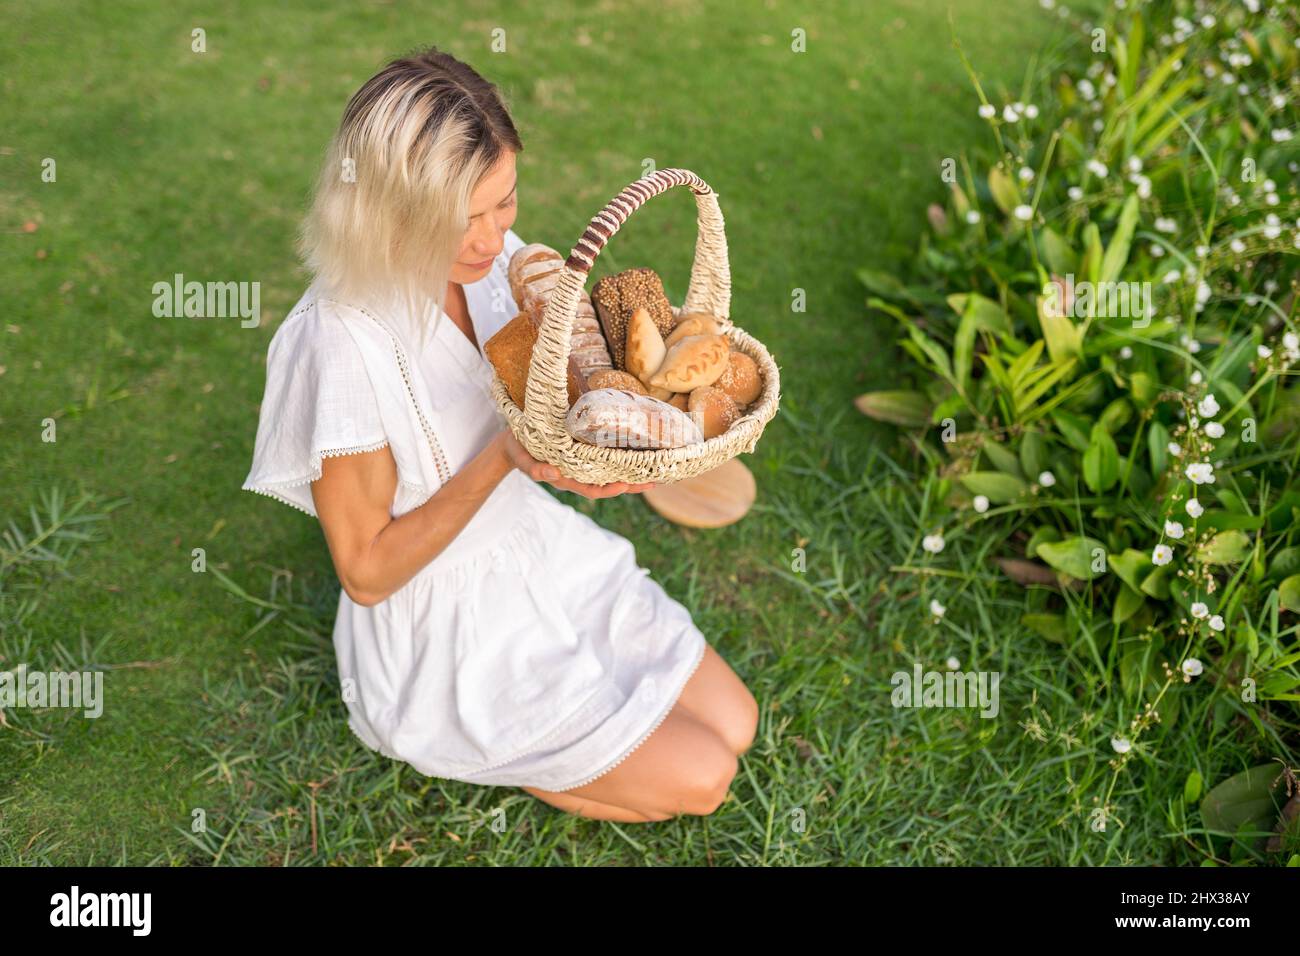 Giovane donna in vestito bianco seduta sull'erba con cestino con assorti di pane casereccio marrone e bianco. Foto di alta qualità Foto Stock